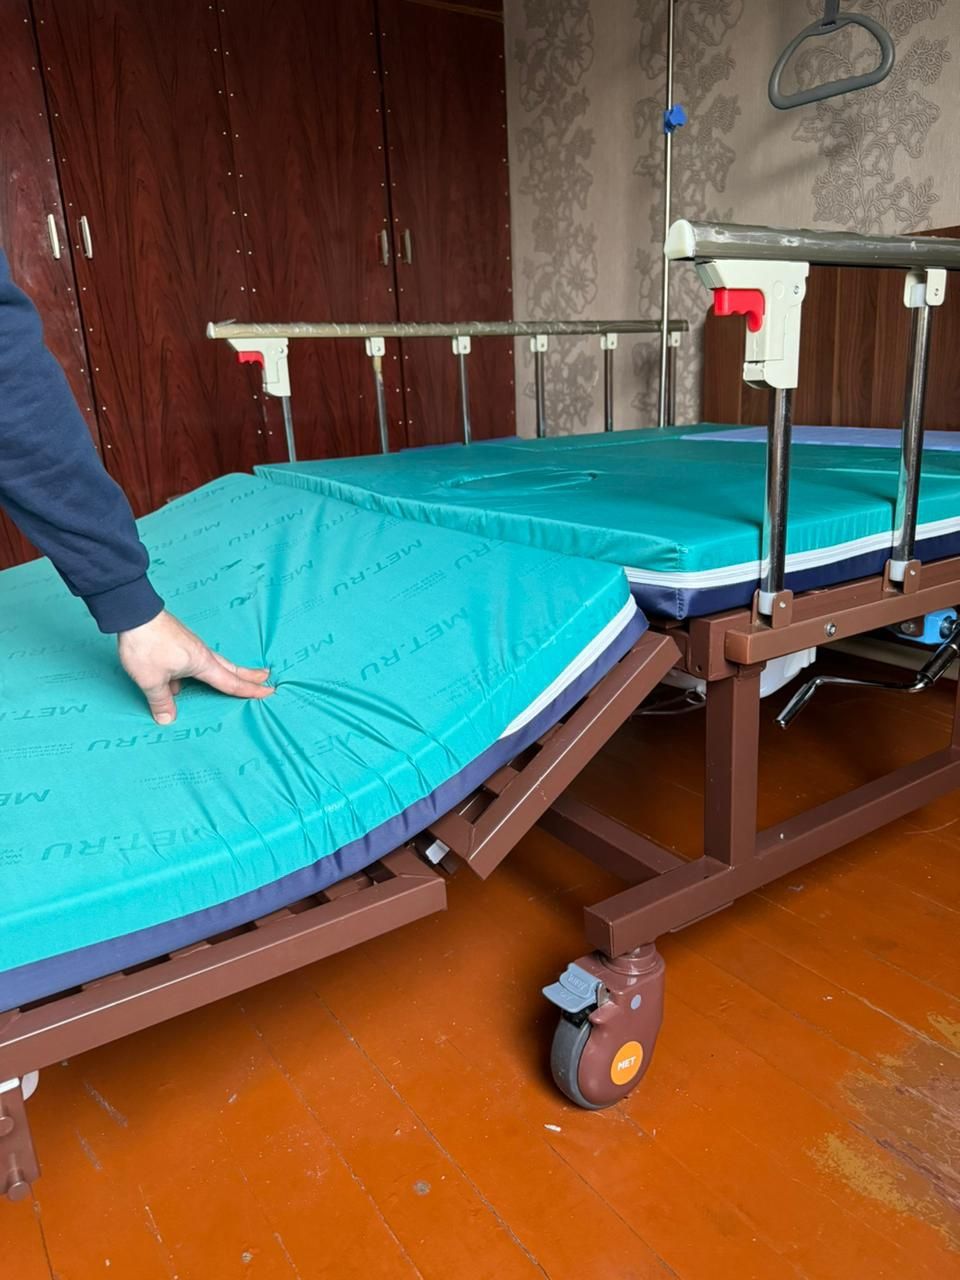 Механическая медицинская кровать для ухода за лежачими больными .